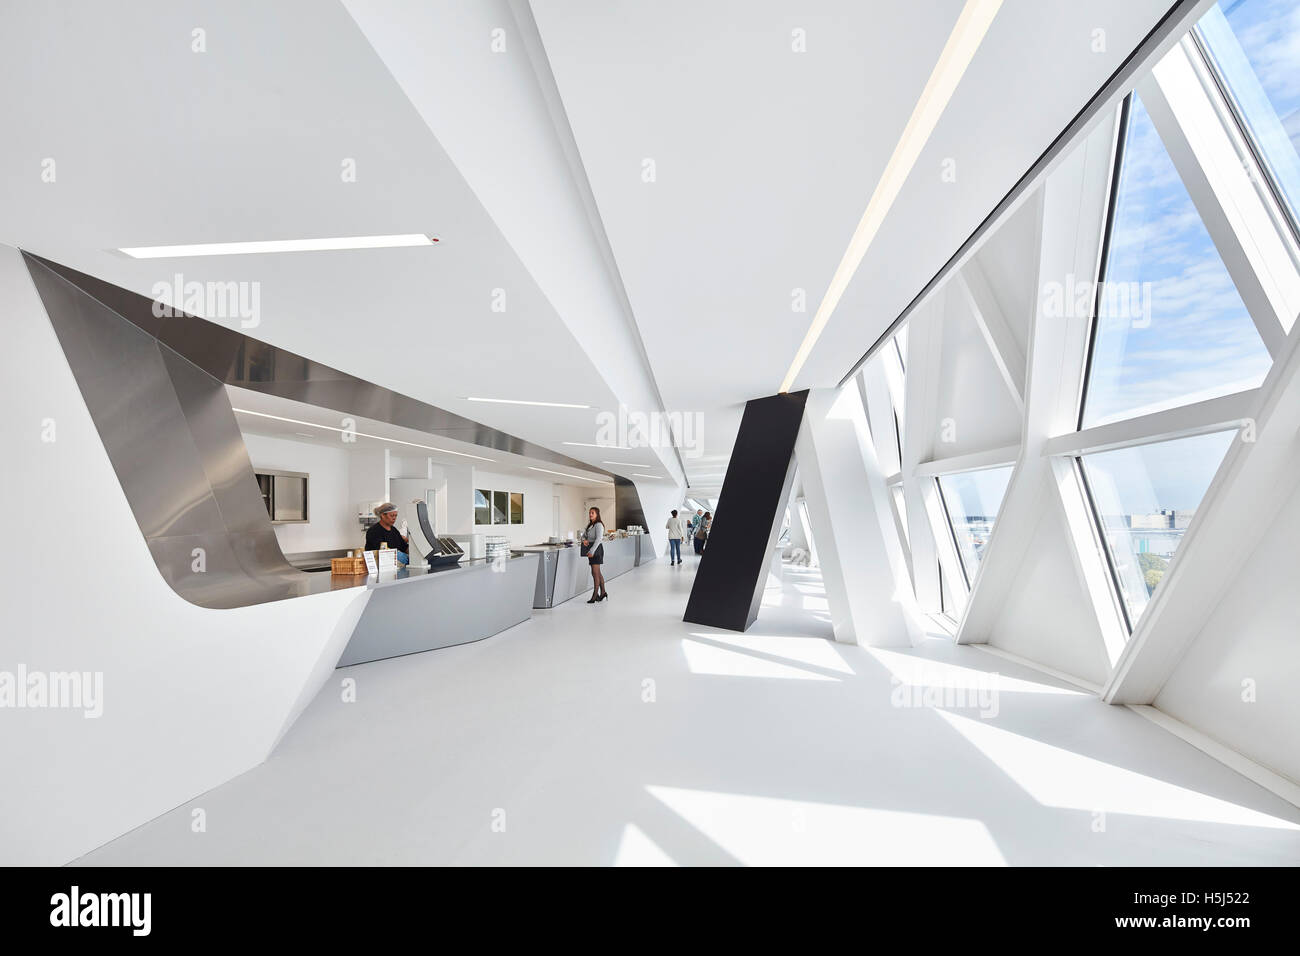 Eingang zum Restaurant mit Fensterwand. Portweinhaus, Antwerpen, Belgien. Architekt: Zaha Hadid Architects, 2016. Stockfoto